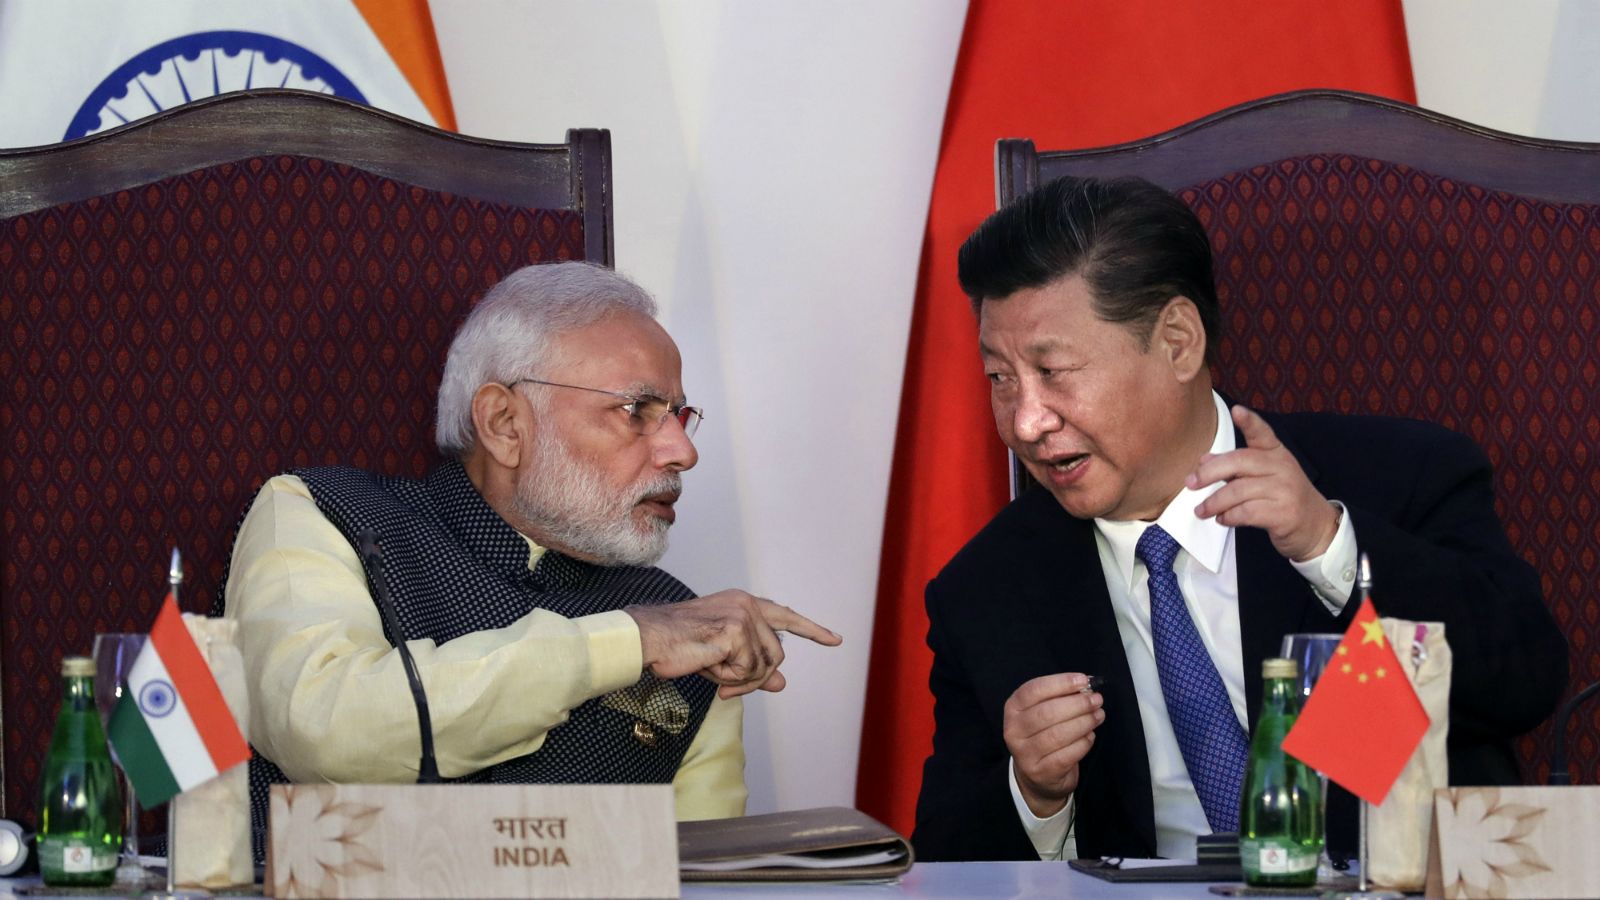 माल्दिभ्स संकटमा, फरक ध्रुवमा उभिए भारत र चीन